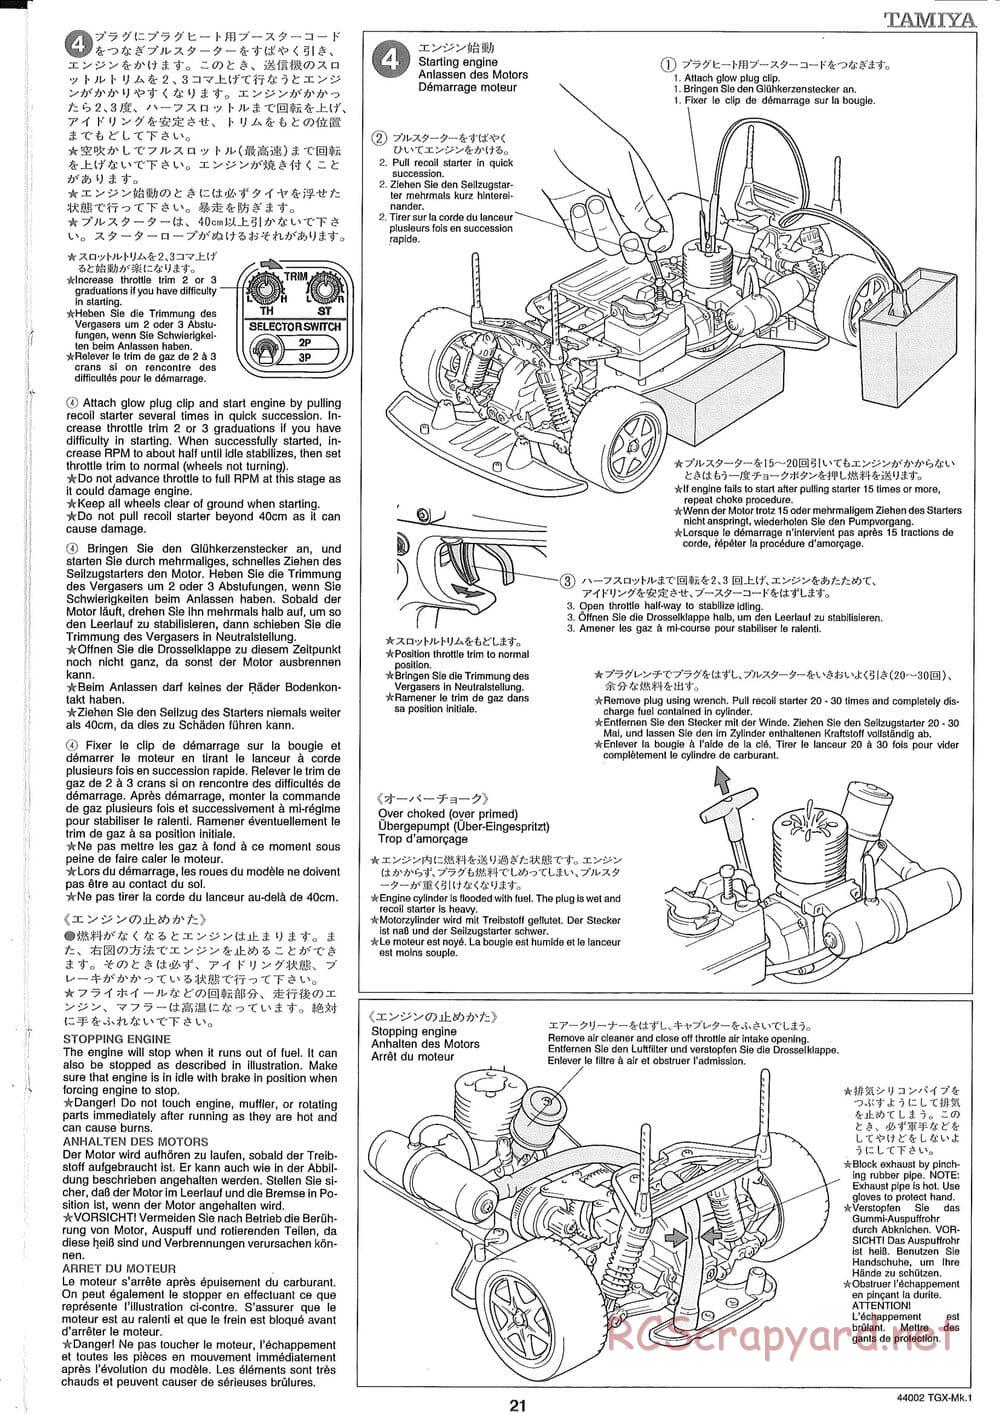 Tamiya - TGX Mk.1 TS Chassis Chassis - Manual - Page 21